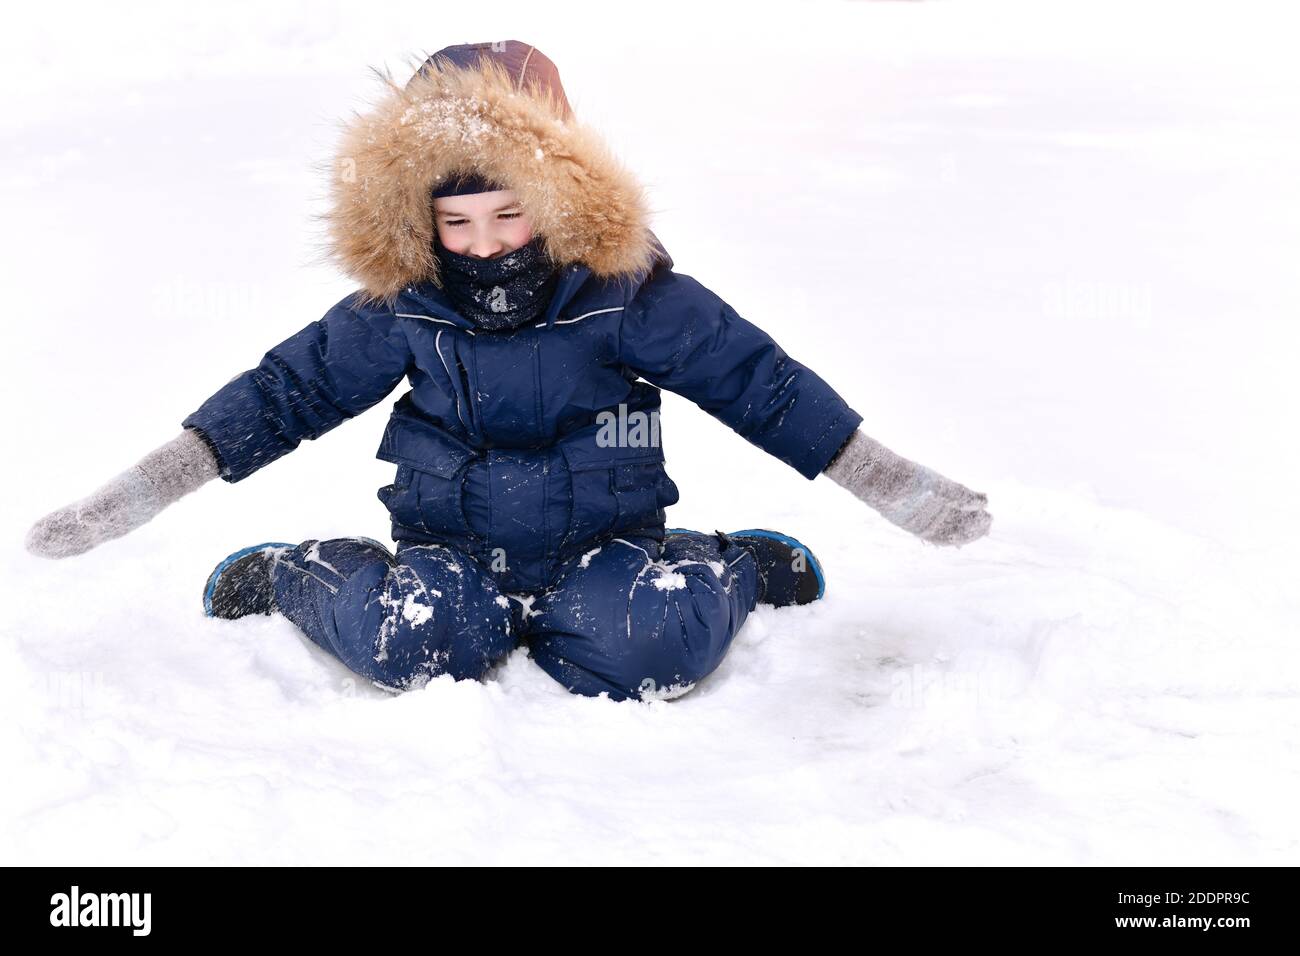 Das Kind ist warm gekleidet, mit einer Pelzhaube und einer Balaclava-Gamasche, die vor dem Frost schützt. Sitzt mit offenen Armen in Fäustlingen und sieht mit Überraschung Stockfoto